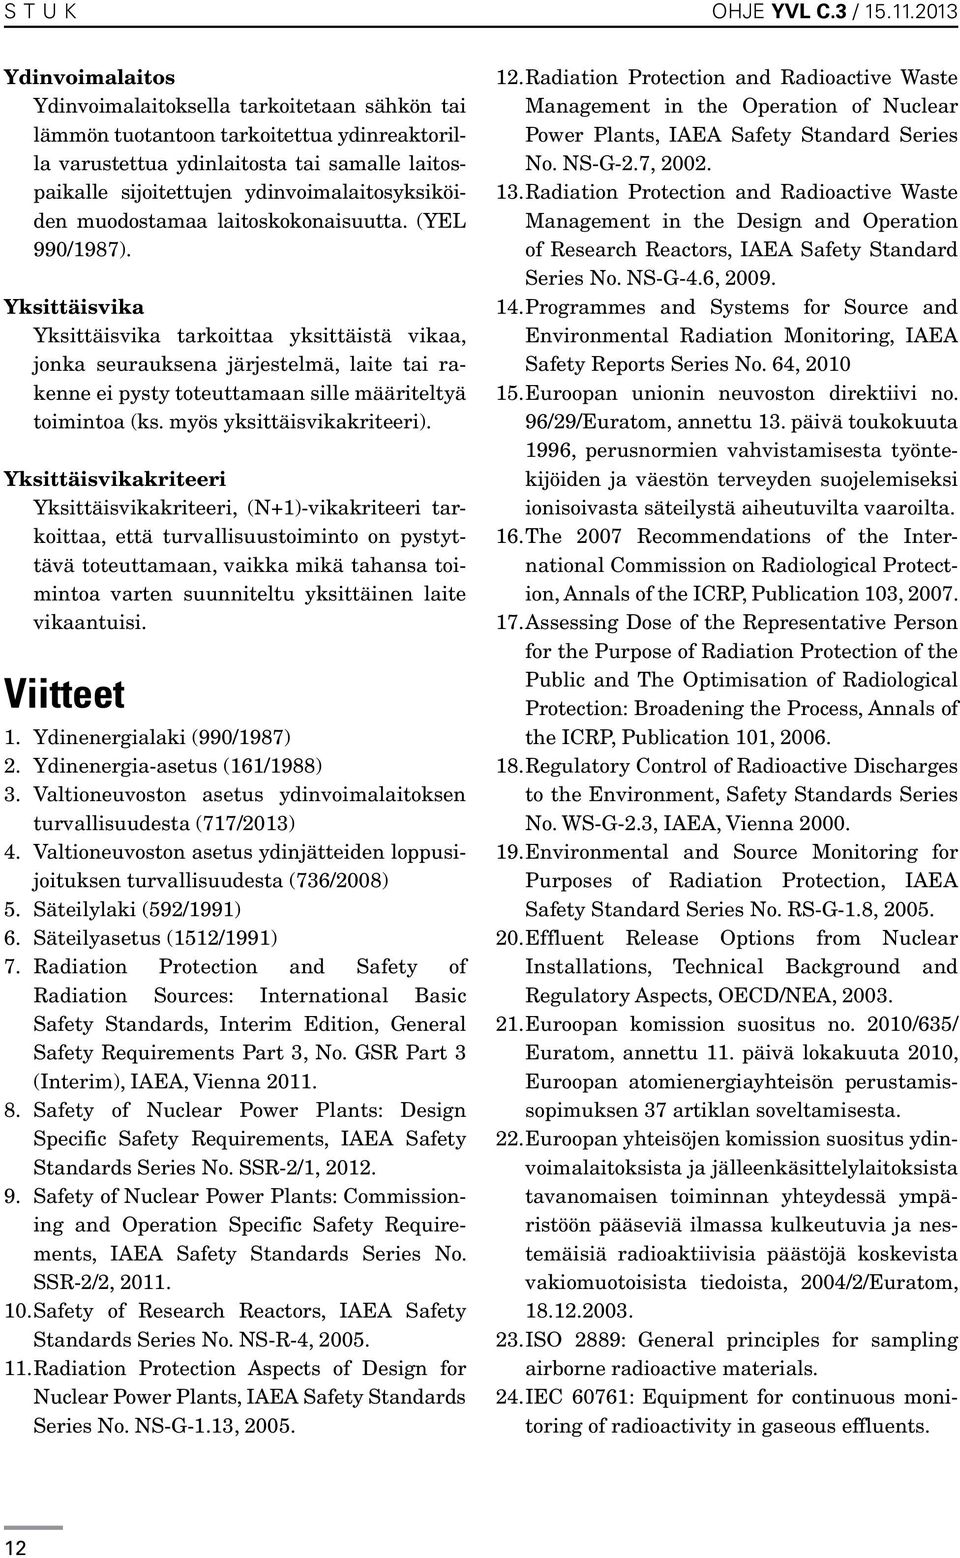 ydinvoimalaitosyksiköiden muodostamaa laitoskokonaisuutta. (YEL 990/1987).